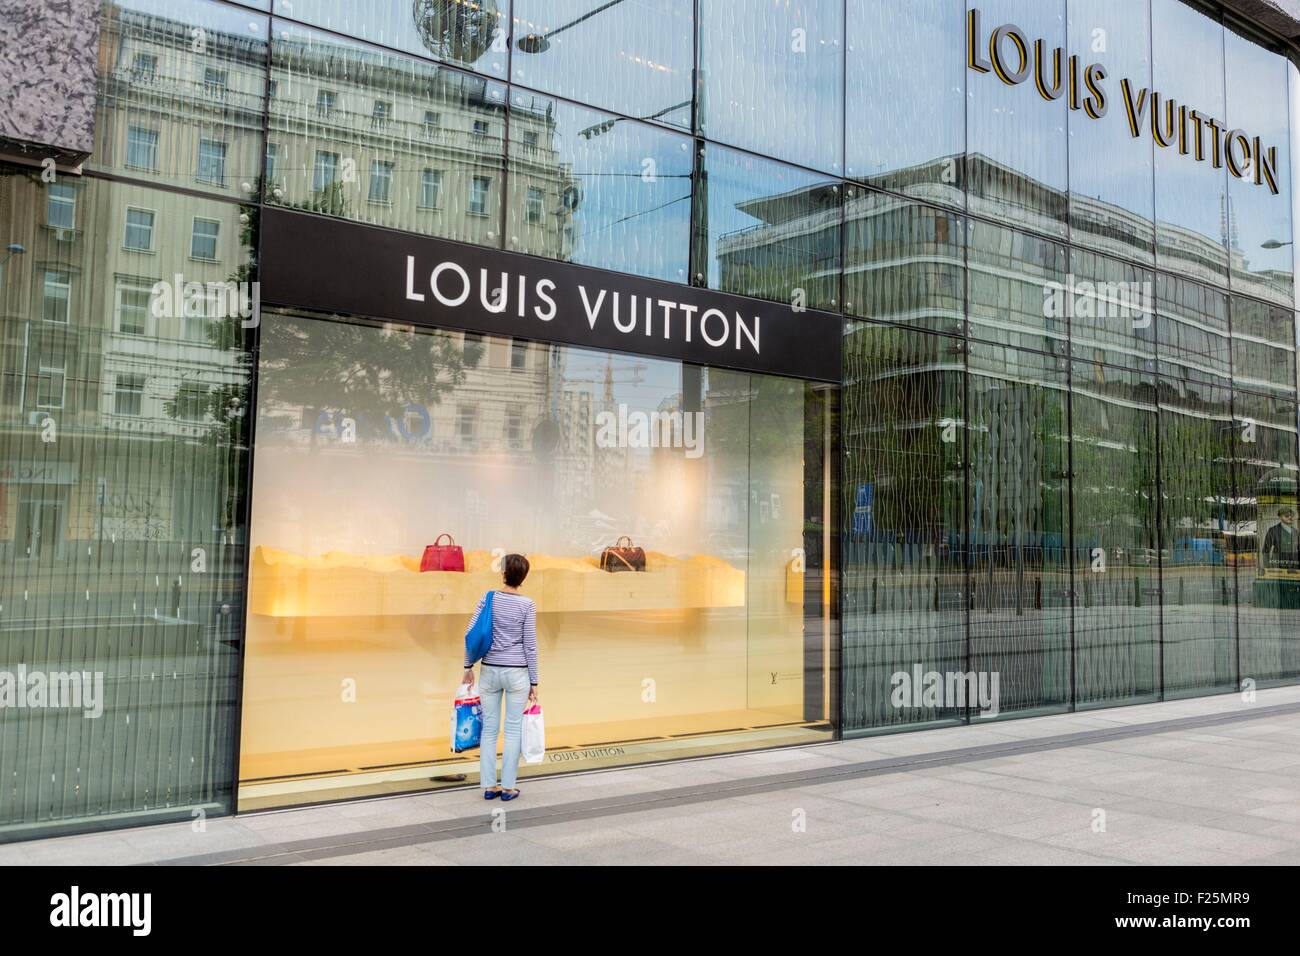 Poland, Mazovia region, Warsaw, new city, the Louis Vuitton store Stock Photo: 87407245 - Alamy